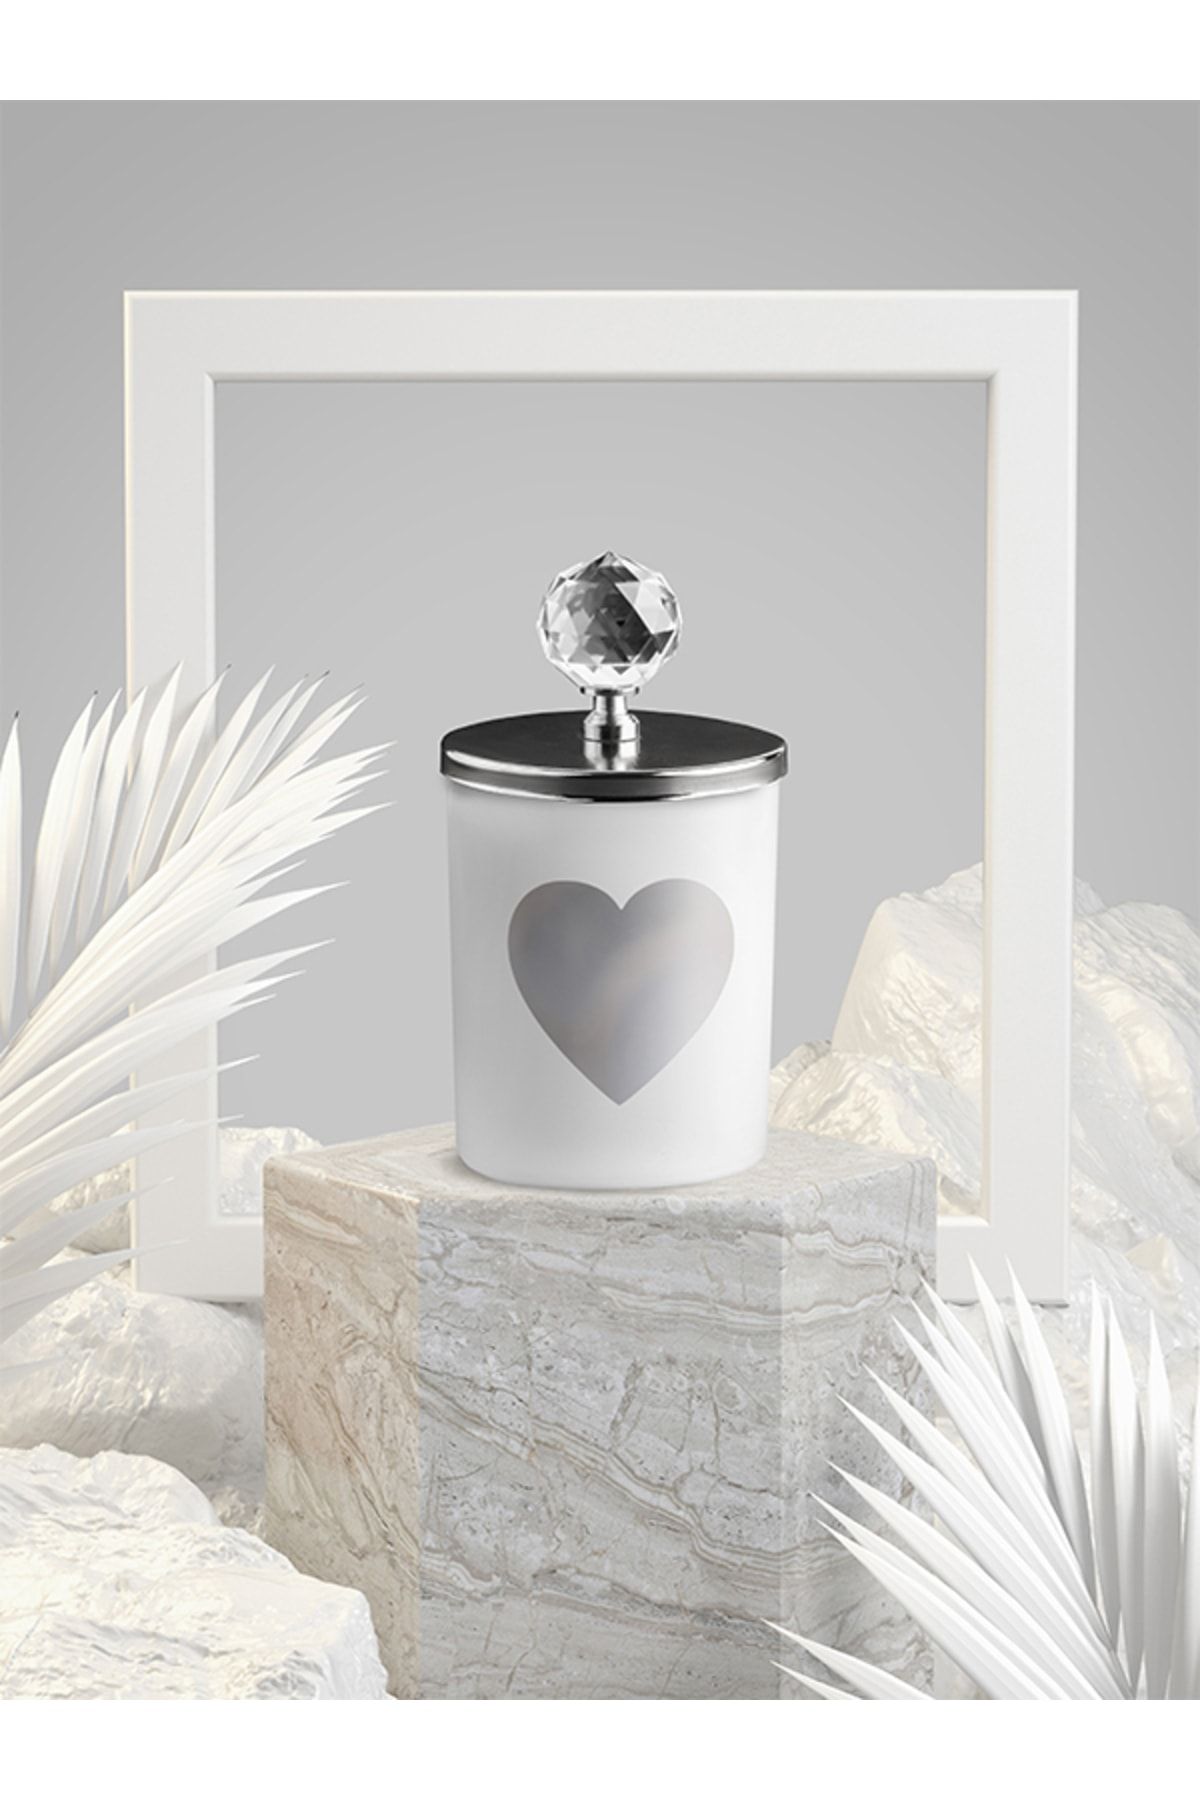 Tiem Concept Özel Tasarım Kalp Vanilya Kokulu Gümüş Kristal Tepelikli Beyaz Bardak Mum